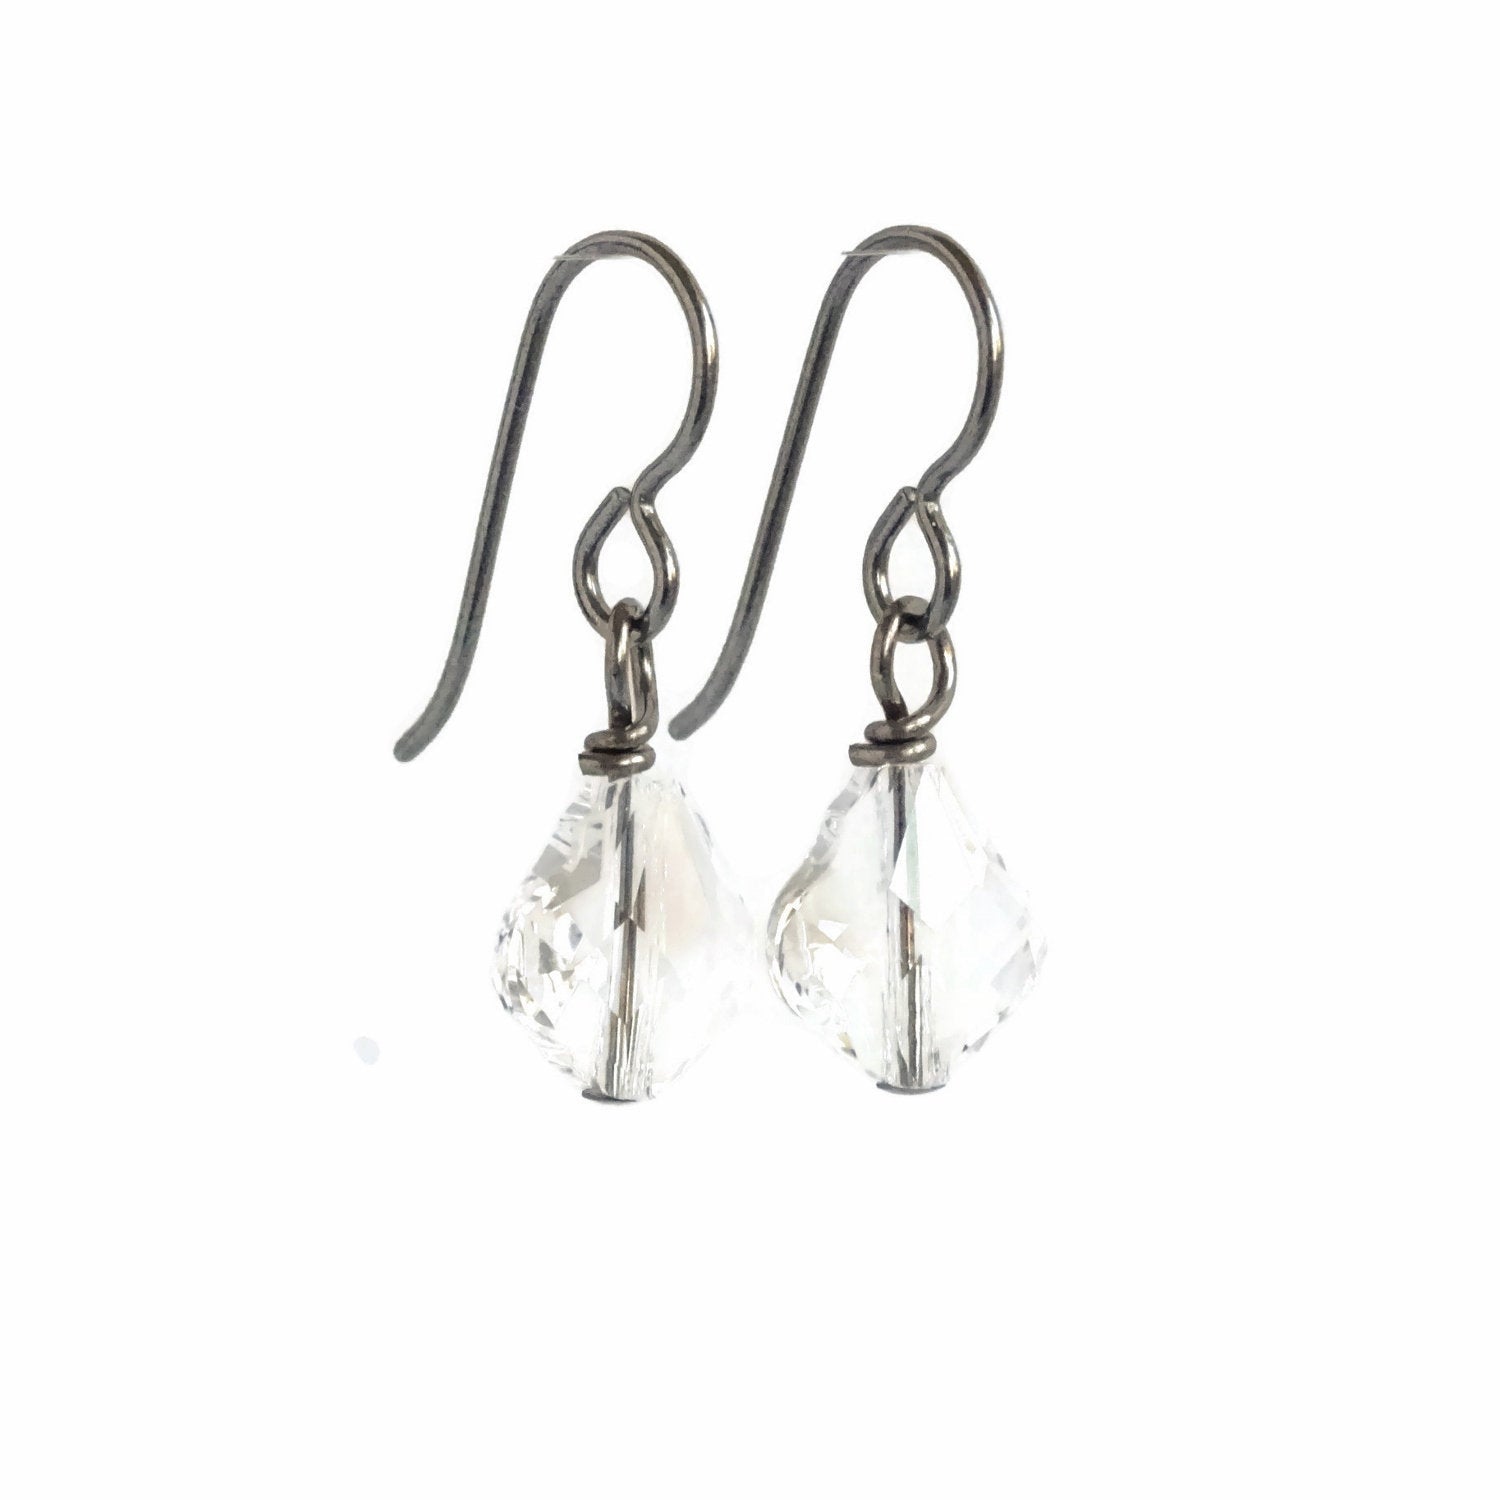 Clear Baroque Crystal Titanium Earrings, Hypoallergenic Nickel Free Niobium Earrings for Sensitive Ears